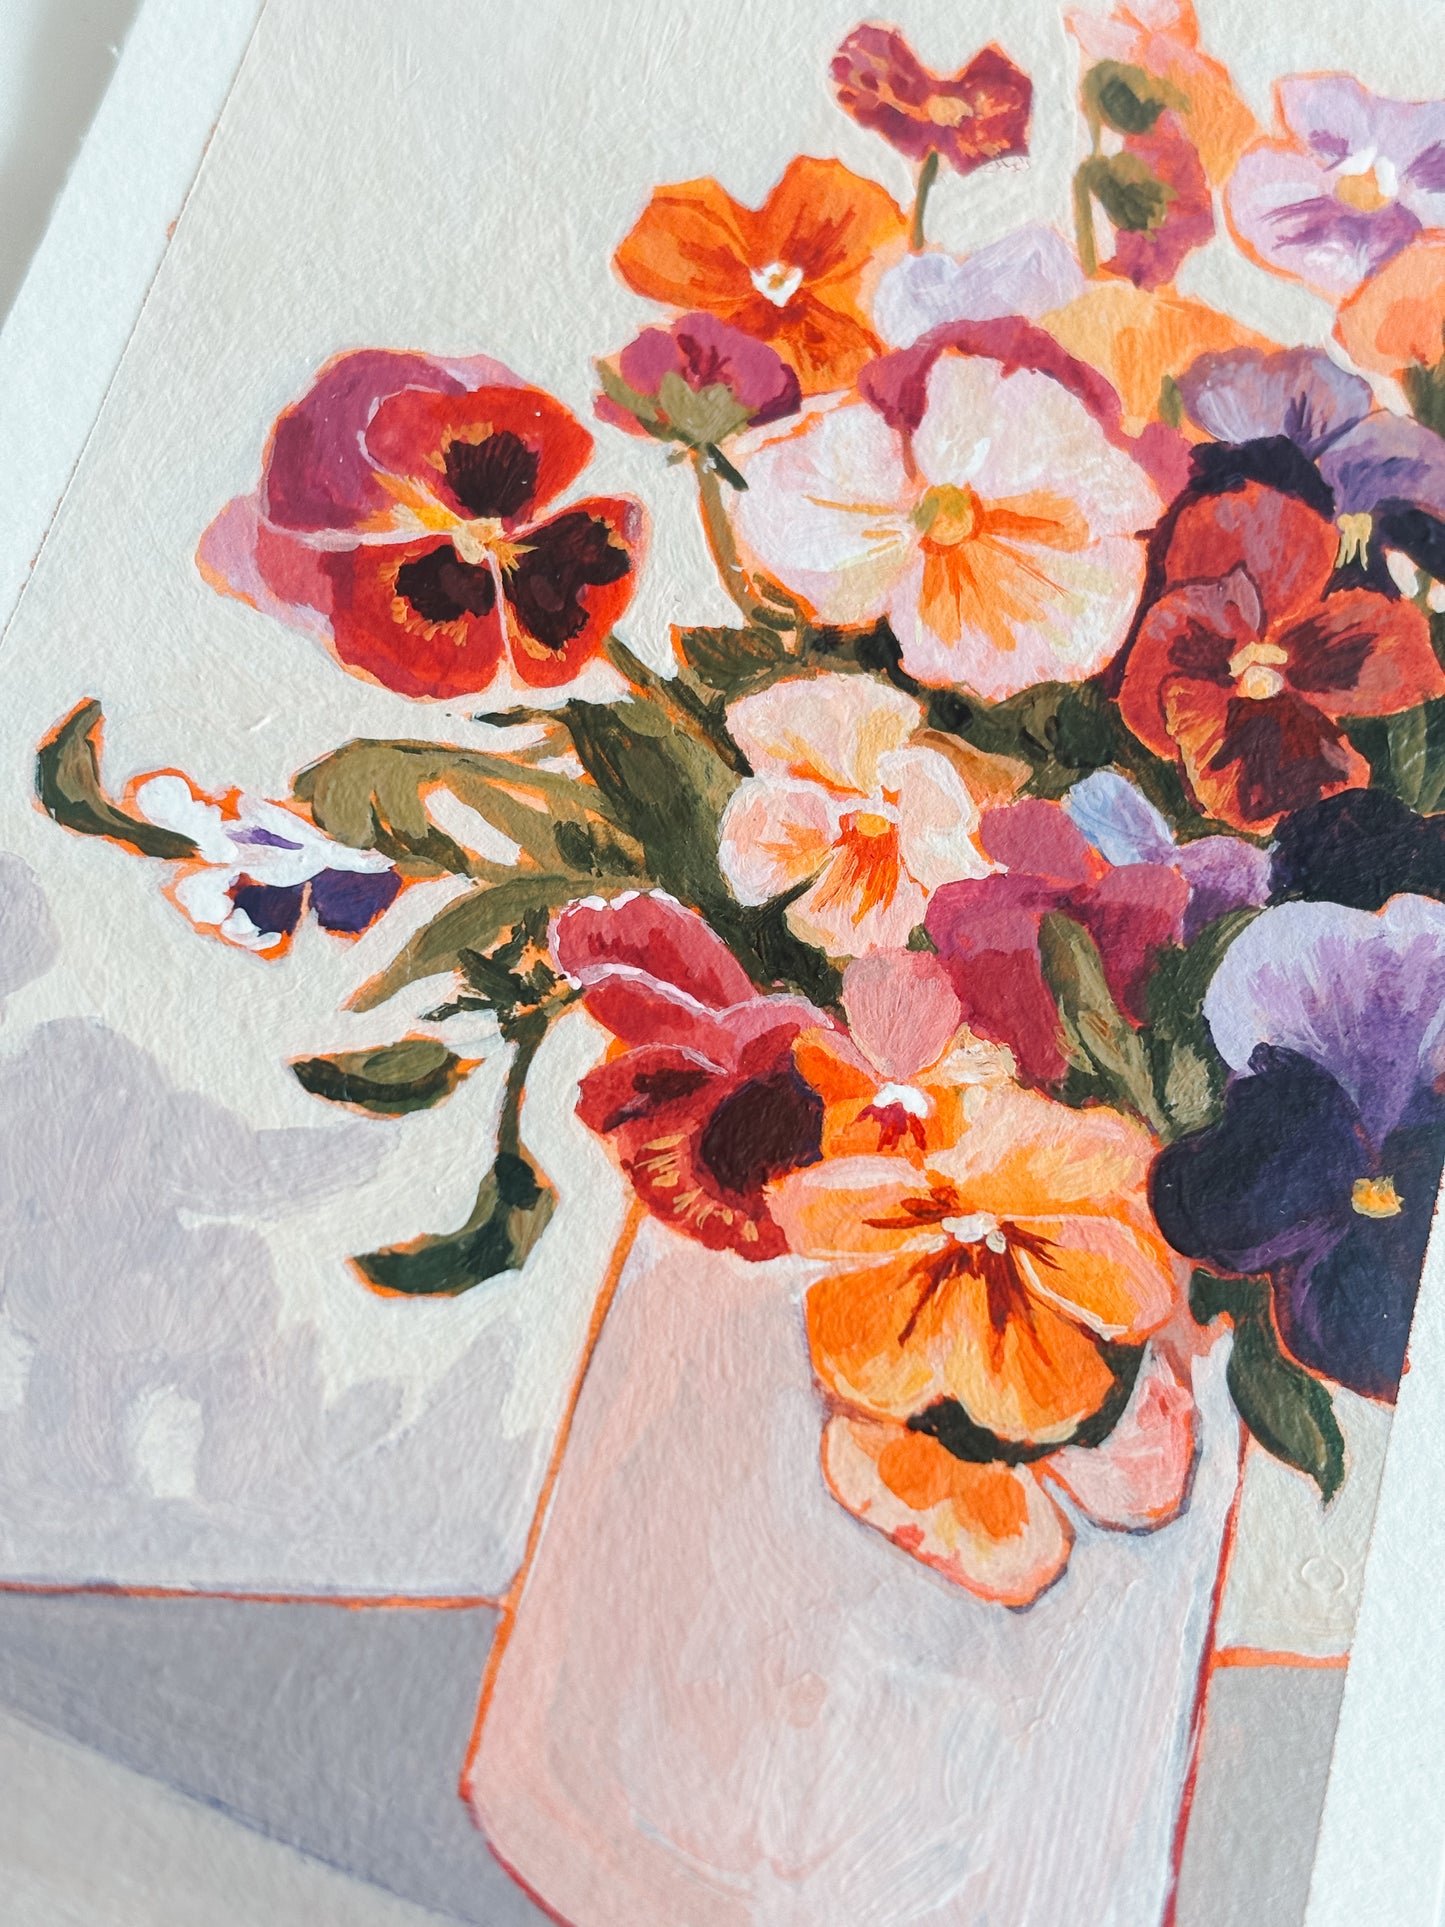 'Blooming Pansies' 4x6 inch original painting